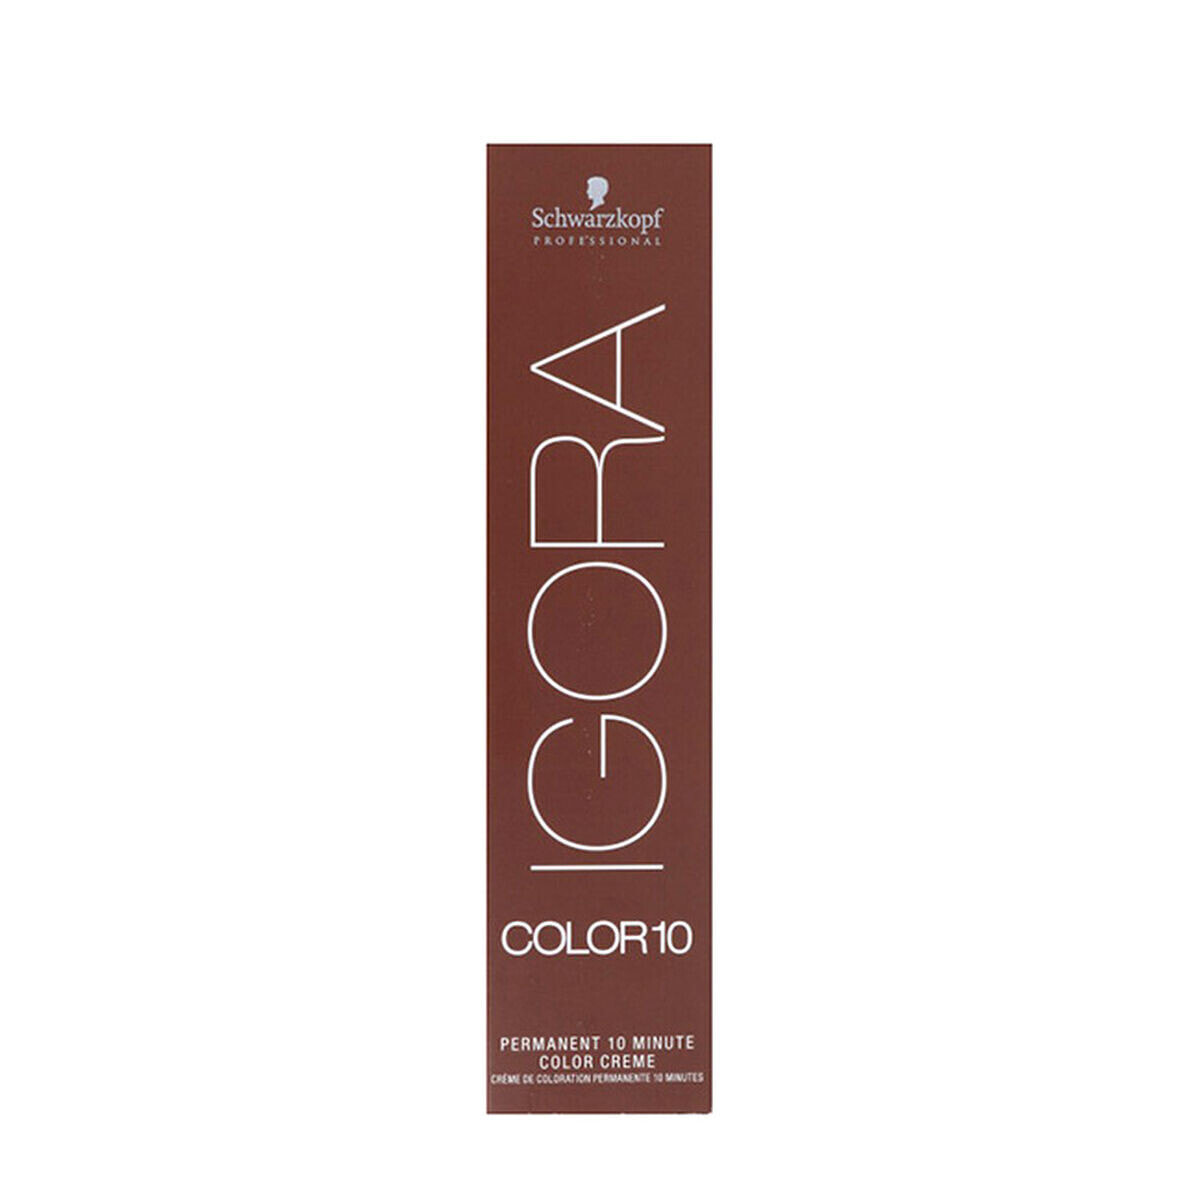 Постоянная краска Igora Color10 Schwarzkopf 7-00 (60 ml)